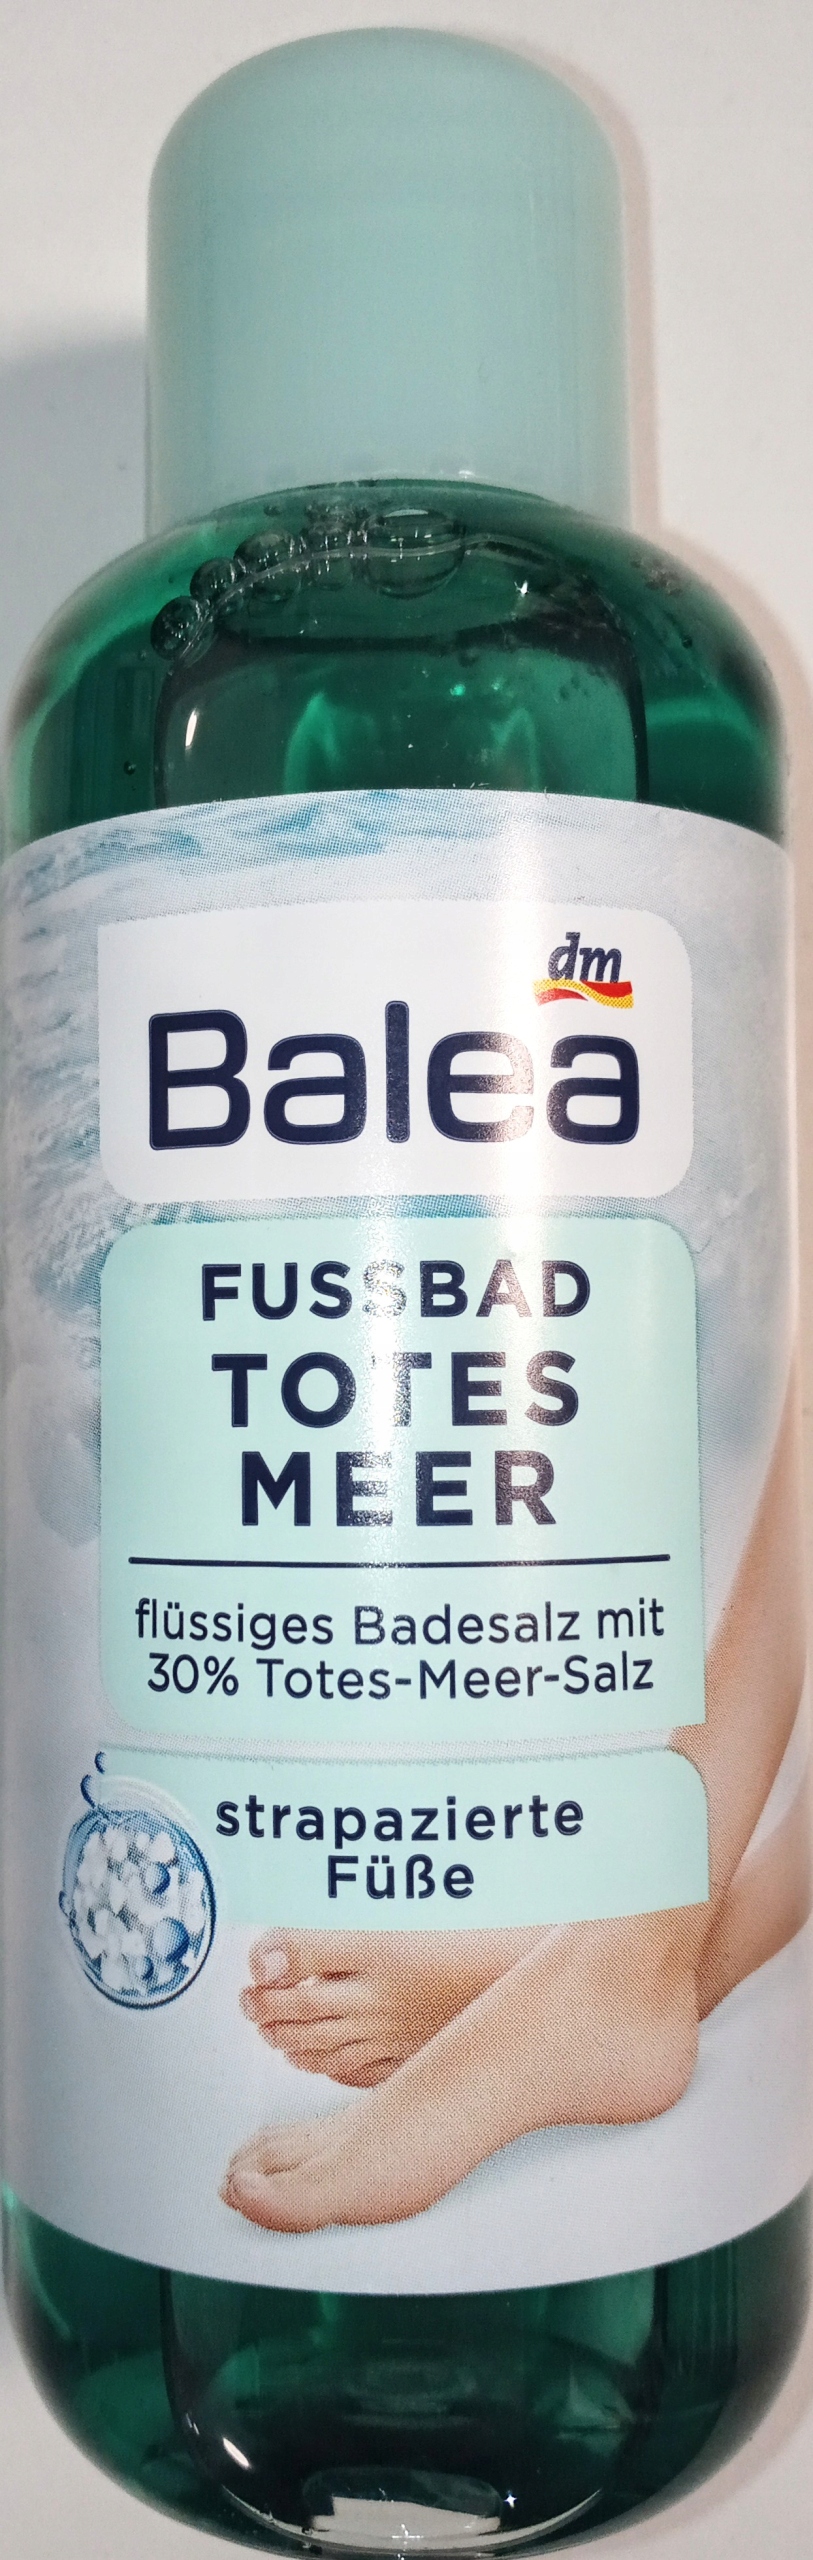 Balea Fussbad Totes Meer 30% soľ z mŕtveho mora